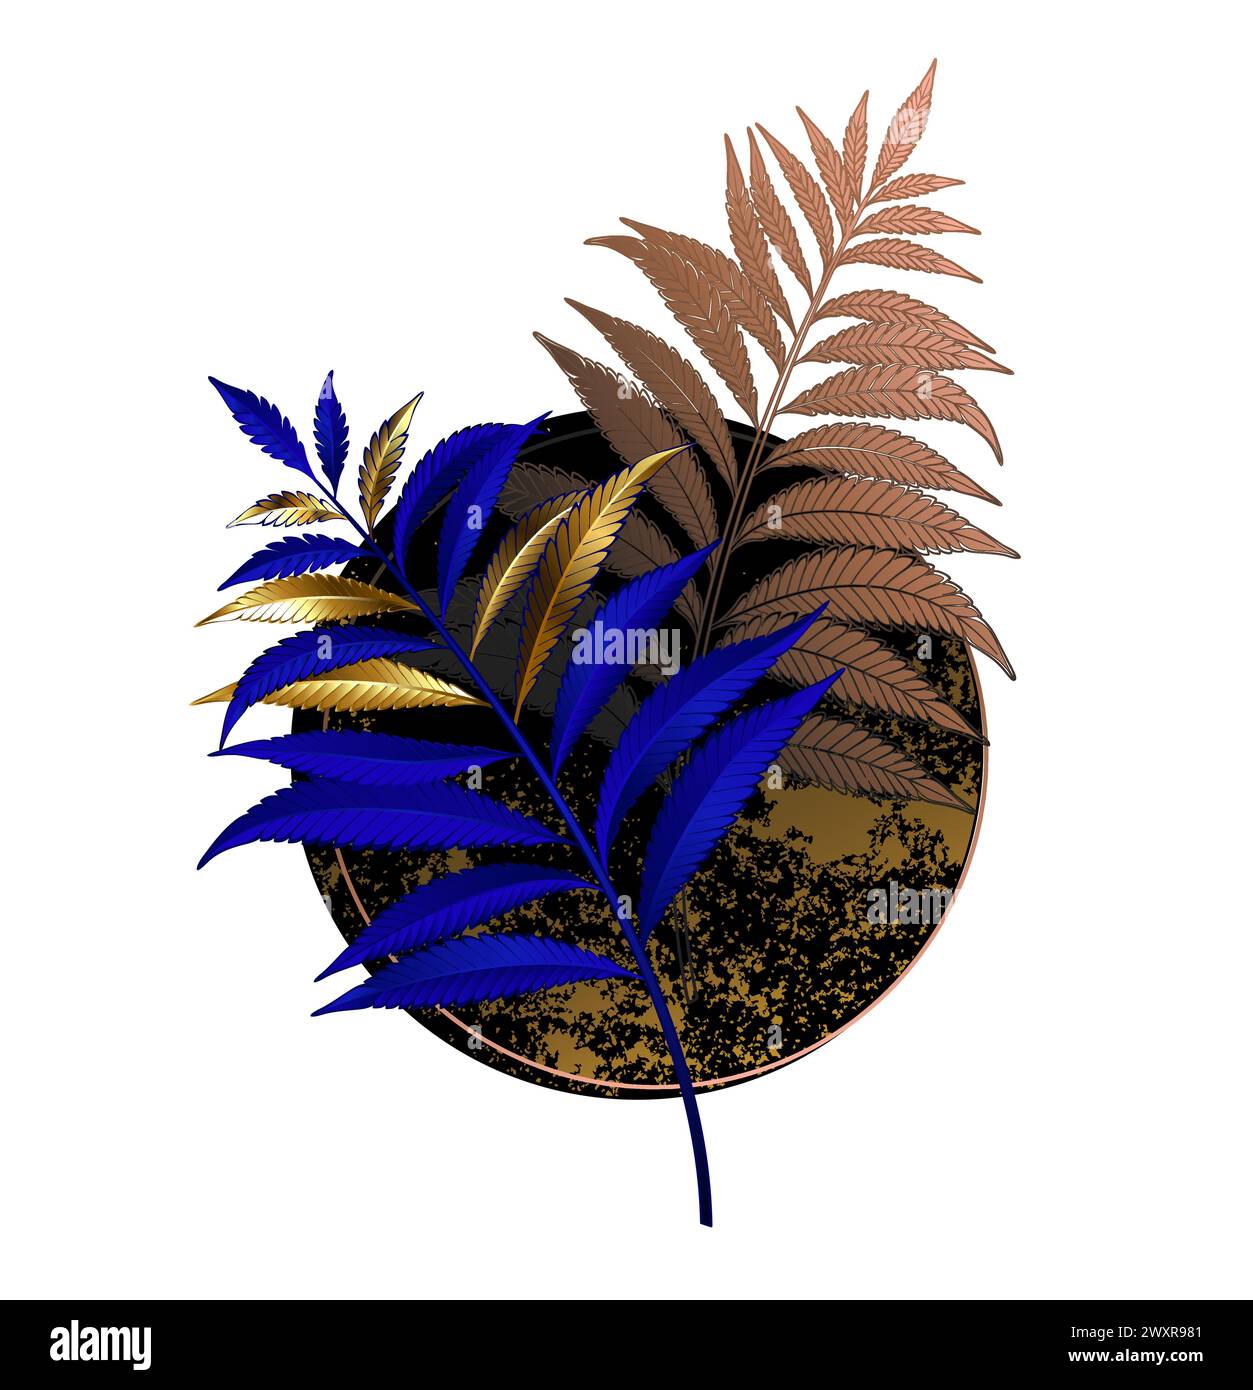 Composizione asimmetrica, insolita, floreale di oro e ultramarina, ramo di felce blu con cerchio testurizzato nero su sfondo bianco. Filiale di Fern. Illustrazione Vettoriale